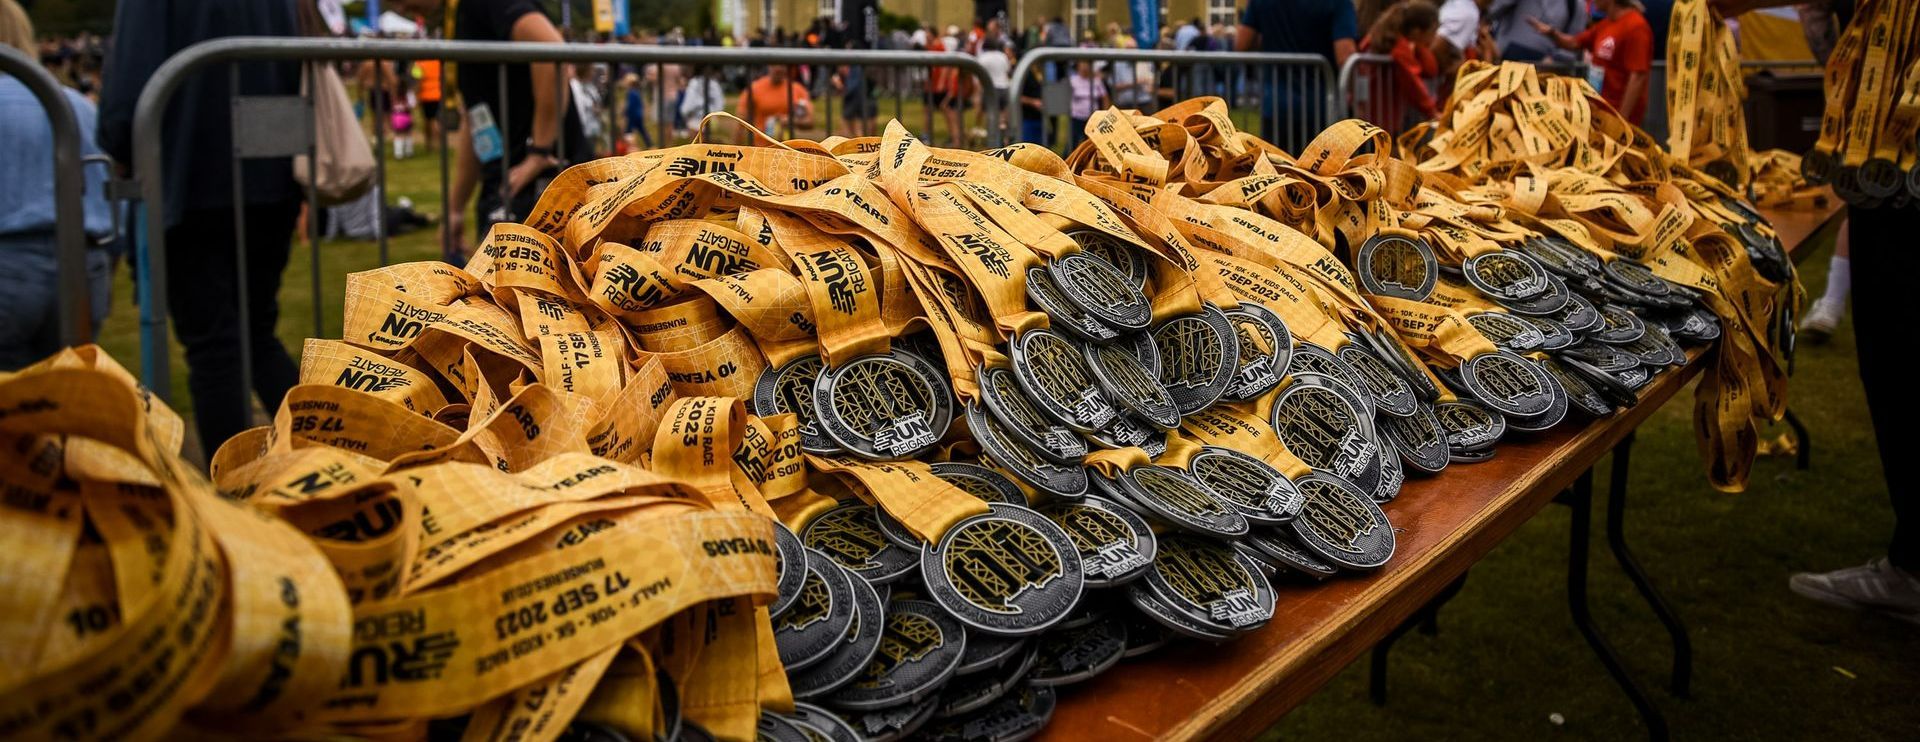 Run-Reigate-Medals-Run-Series